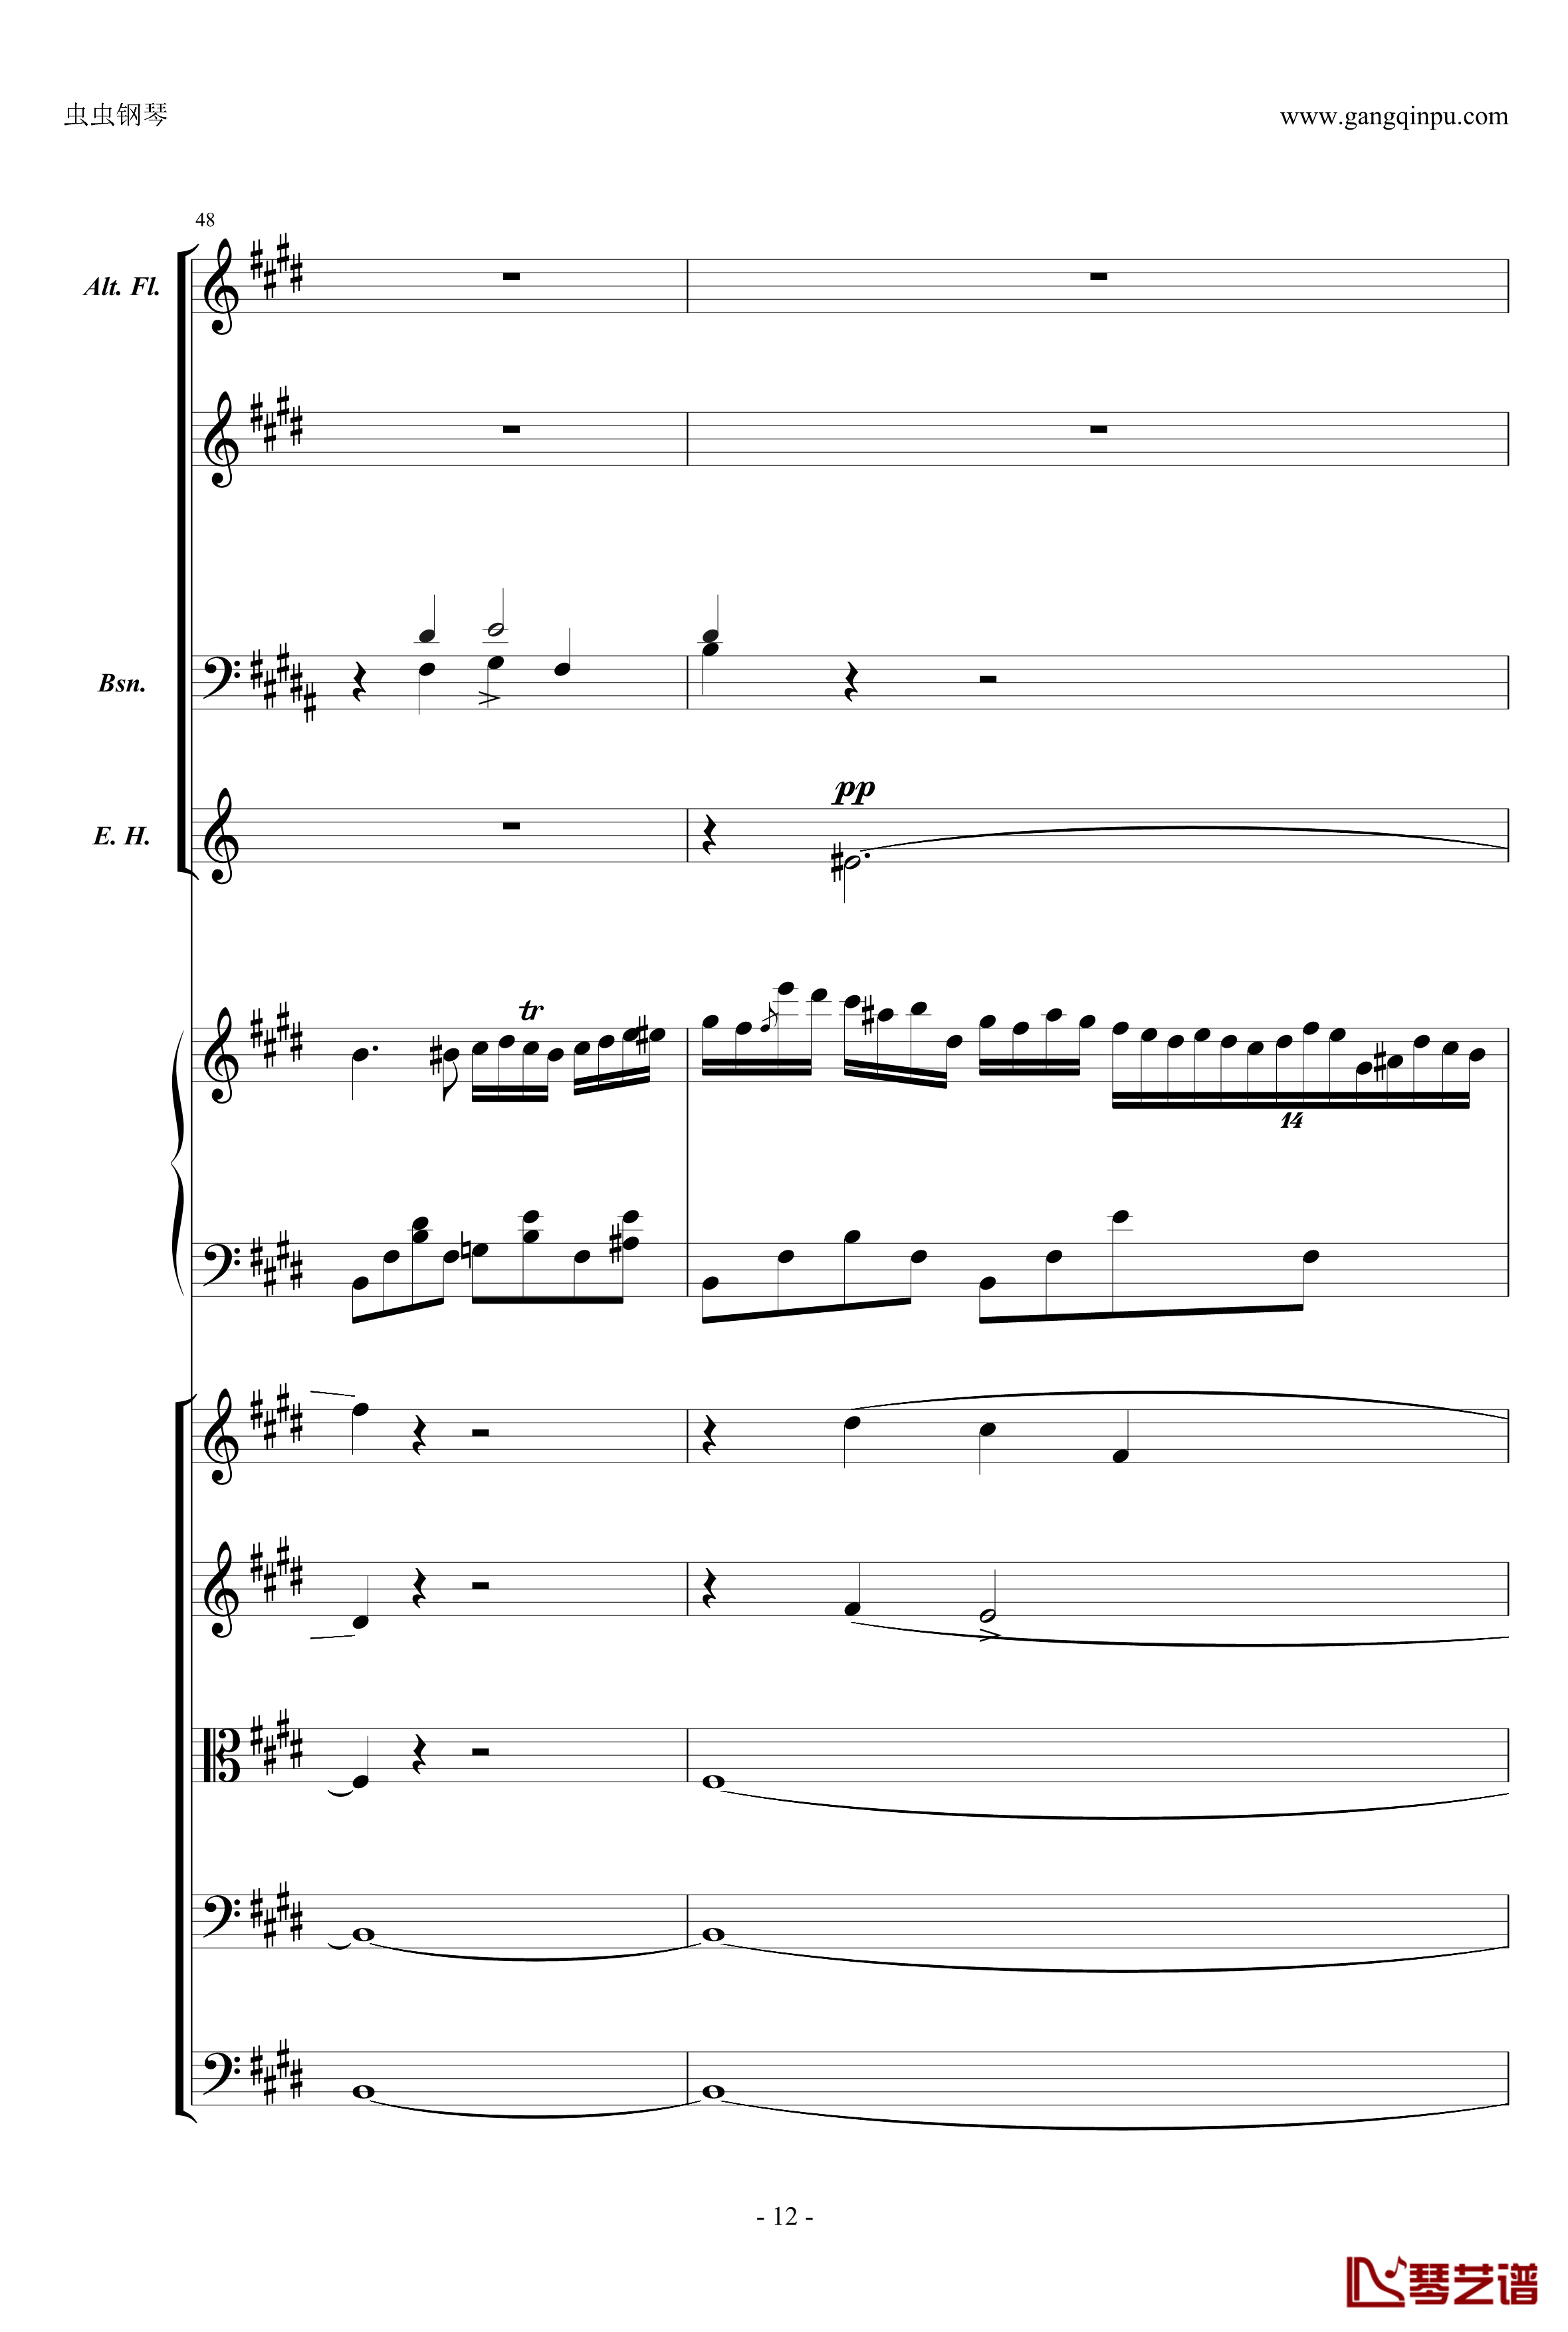 萧邦第一钢琴协奏曲第二乐章钢琴谱-肖邦-chopin12